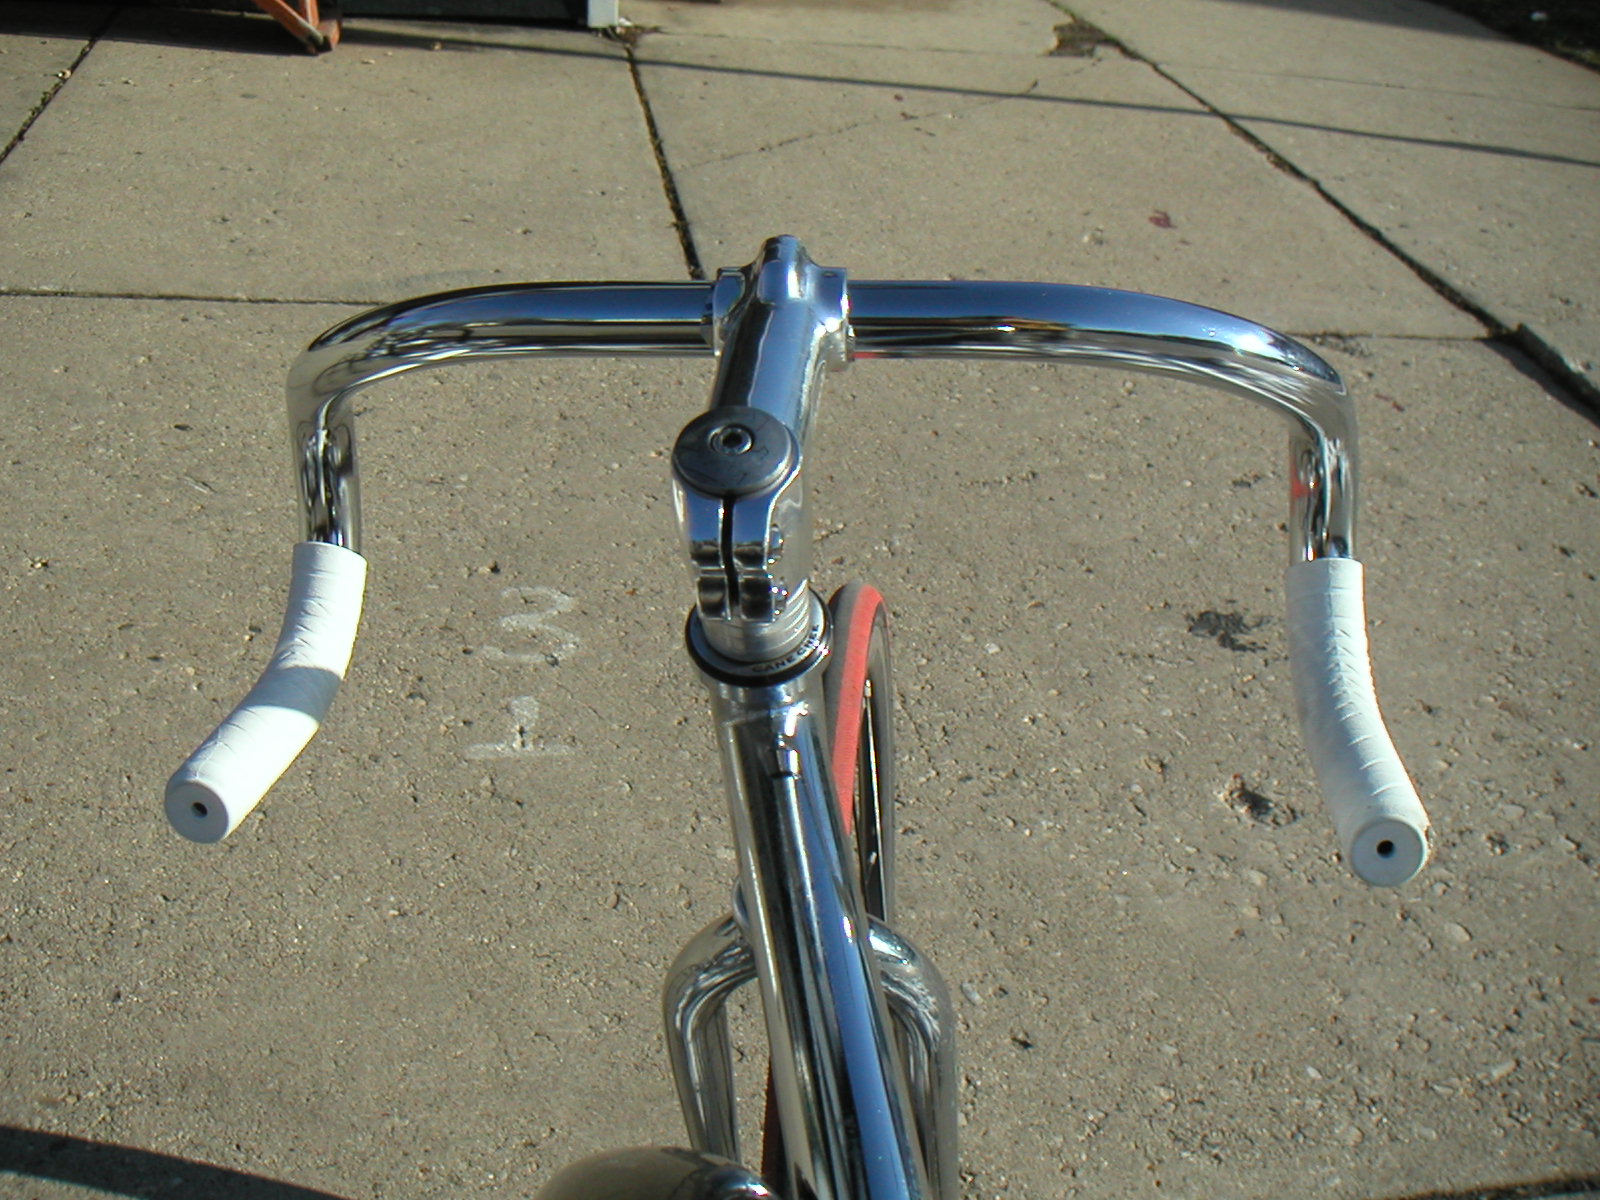 bike steering handle